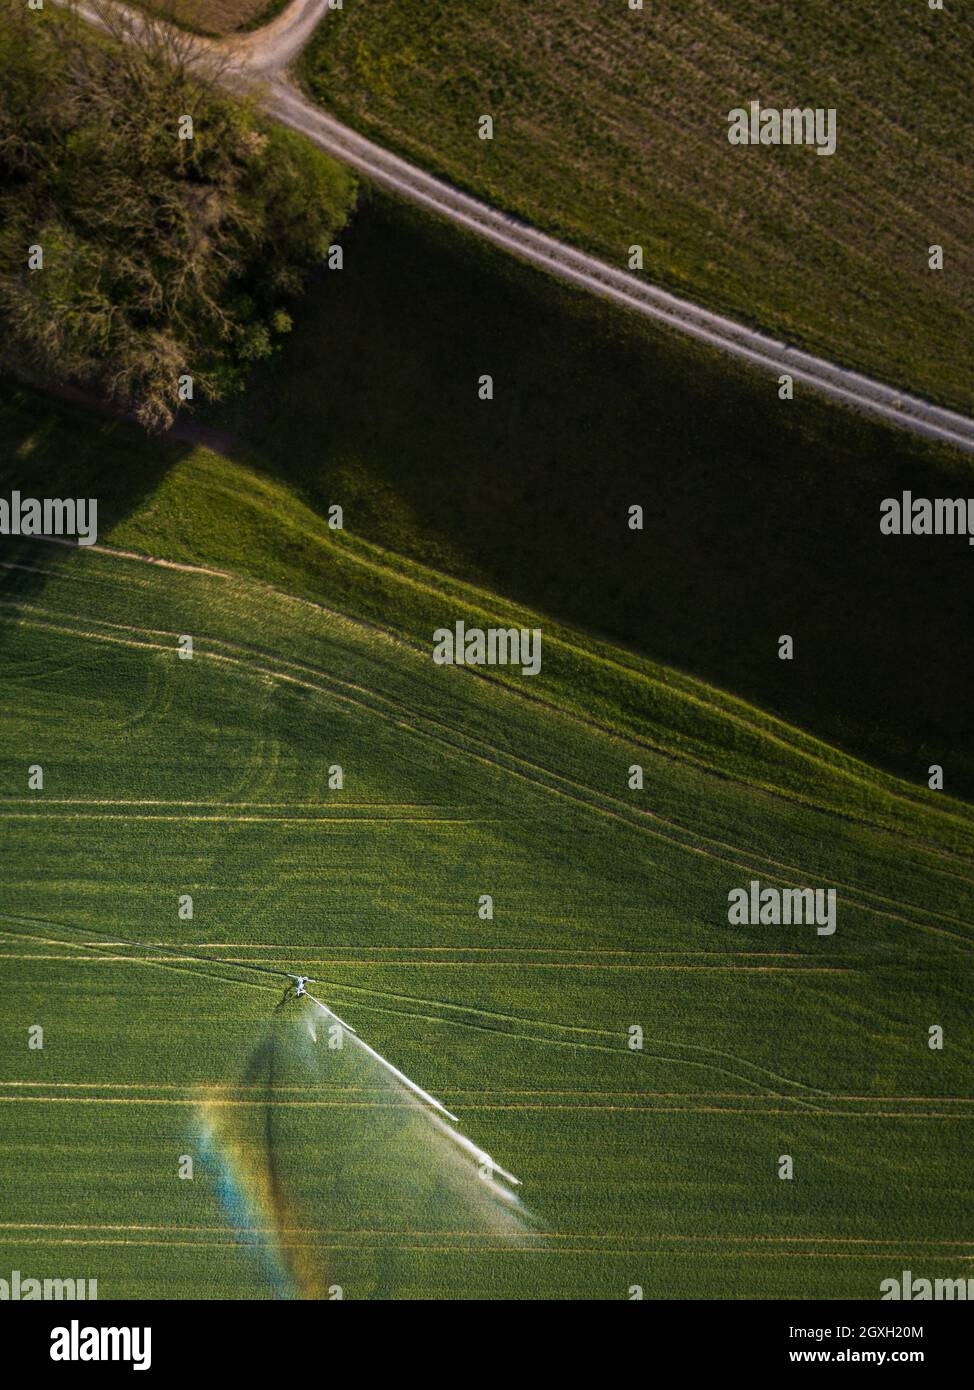 Terres agricoles d'en haut - image aérienne d'un vert luxuriant champ irrigué Banque D'Images